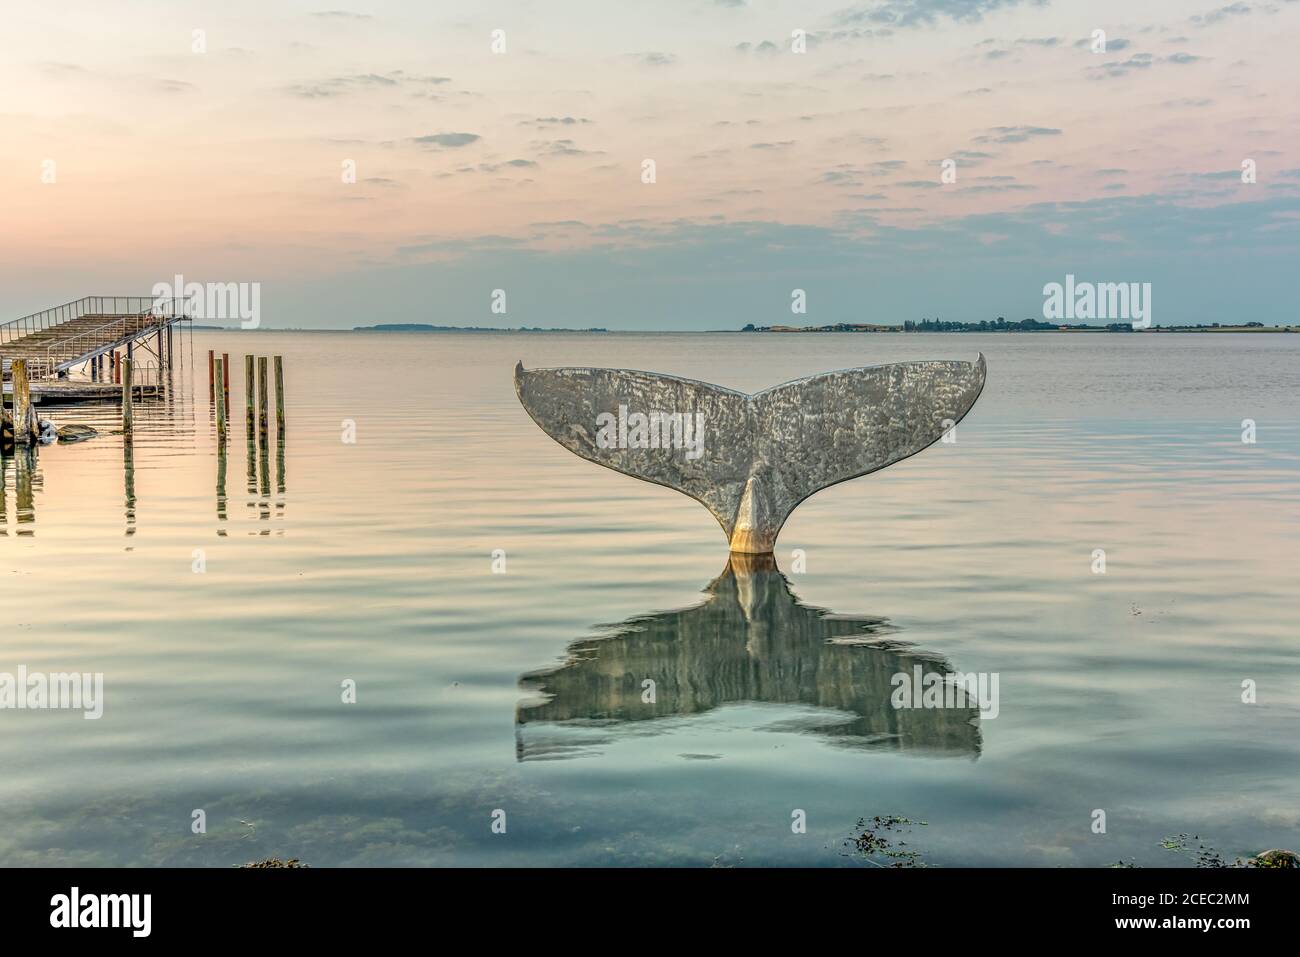 La coda delle balene, una scultura a Faaborg. Il bagno del porto si riflette nel mare e Avernako sullo sfondo, Faaborg, Danimarca, 16 agosto 2020 Foto Stock